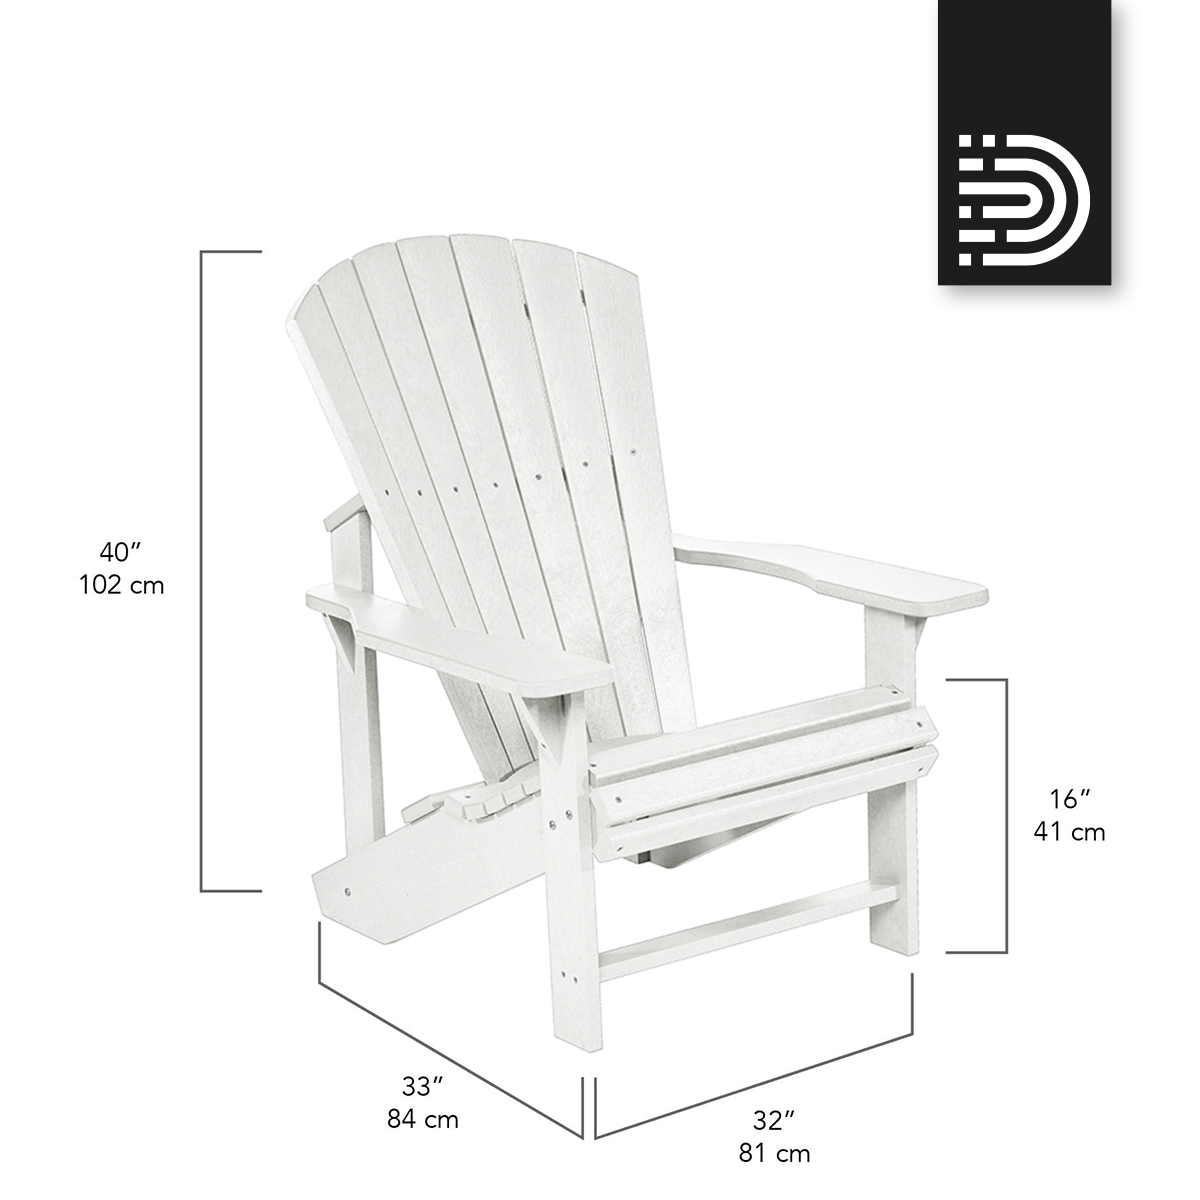  C01 Classic Adirondack Chair - white 02